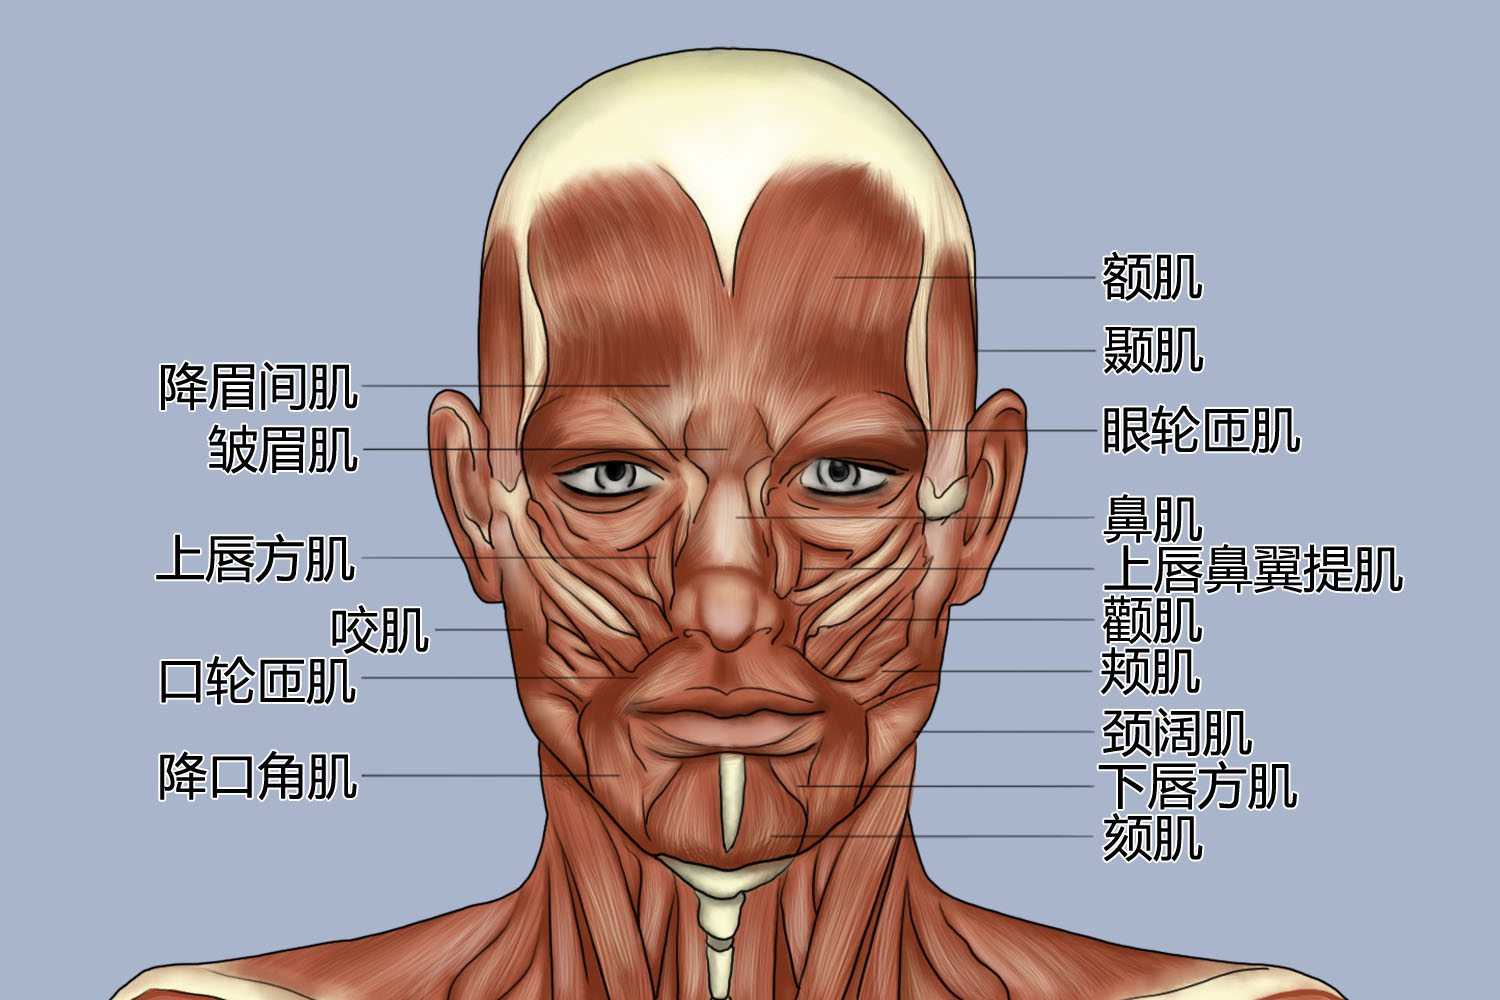 环绕口裂的环形肌称口轮匝肌,辐射状肌分别位于口唇的上,下方,其中较